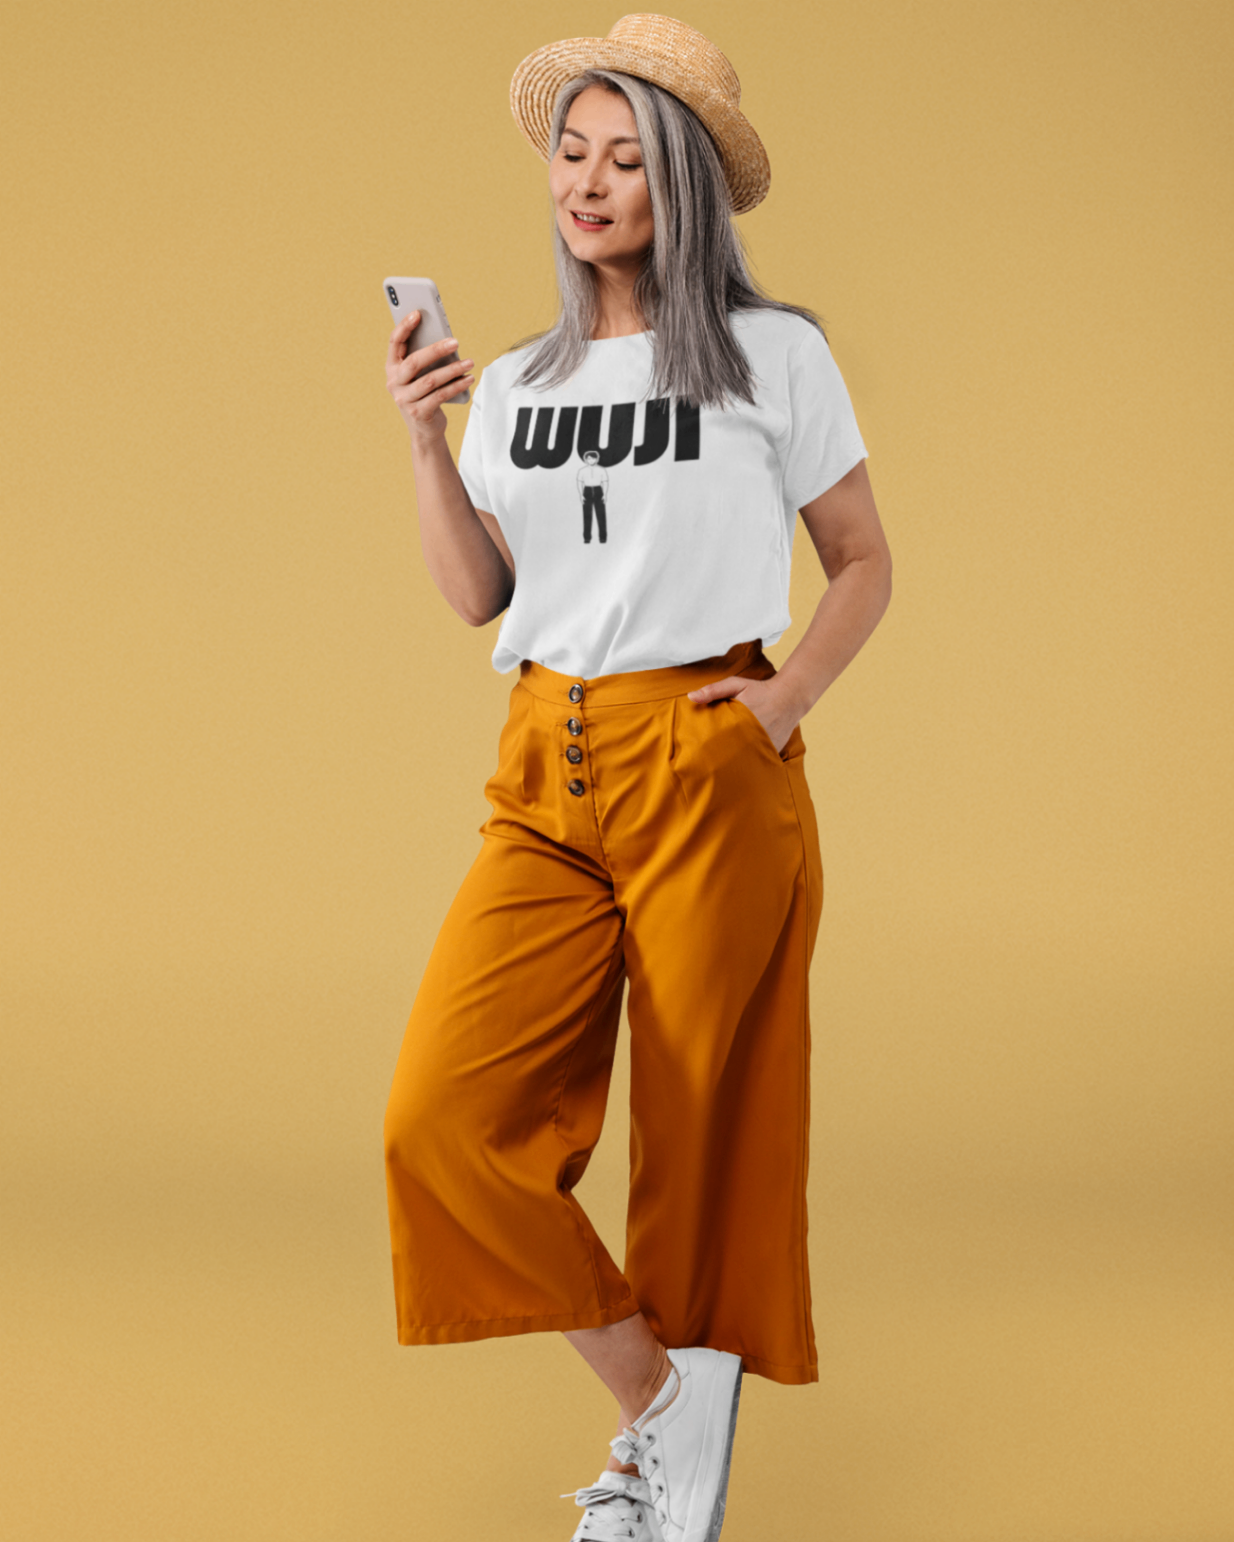 Women's "WUJI" T-shirt